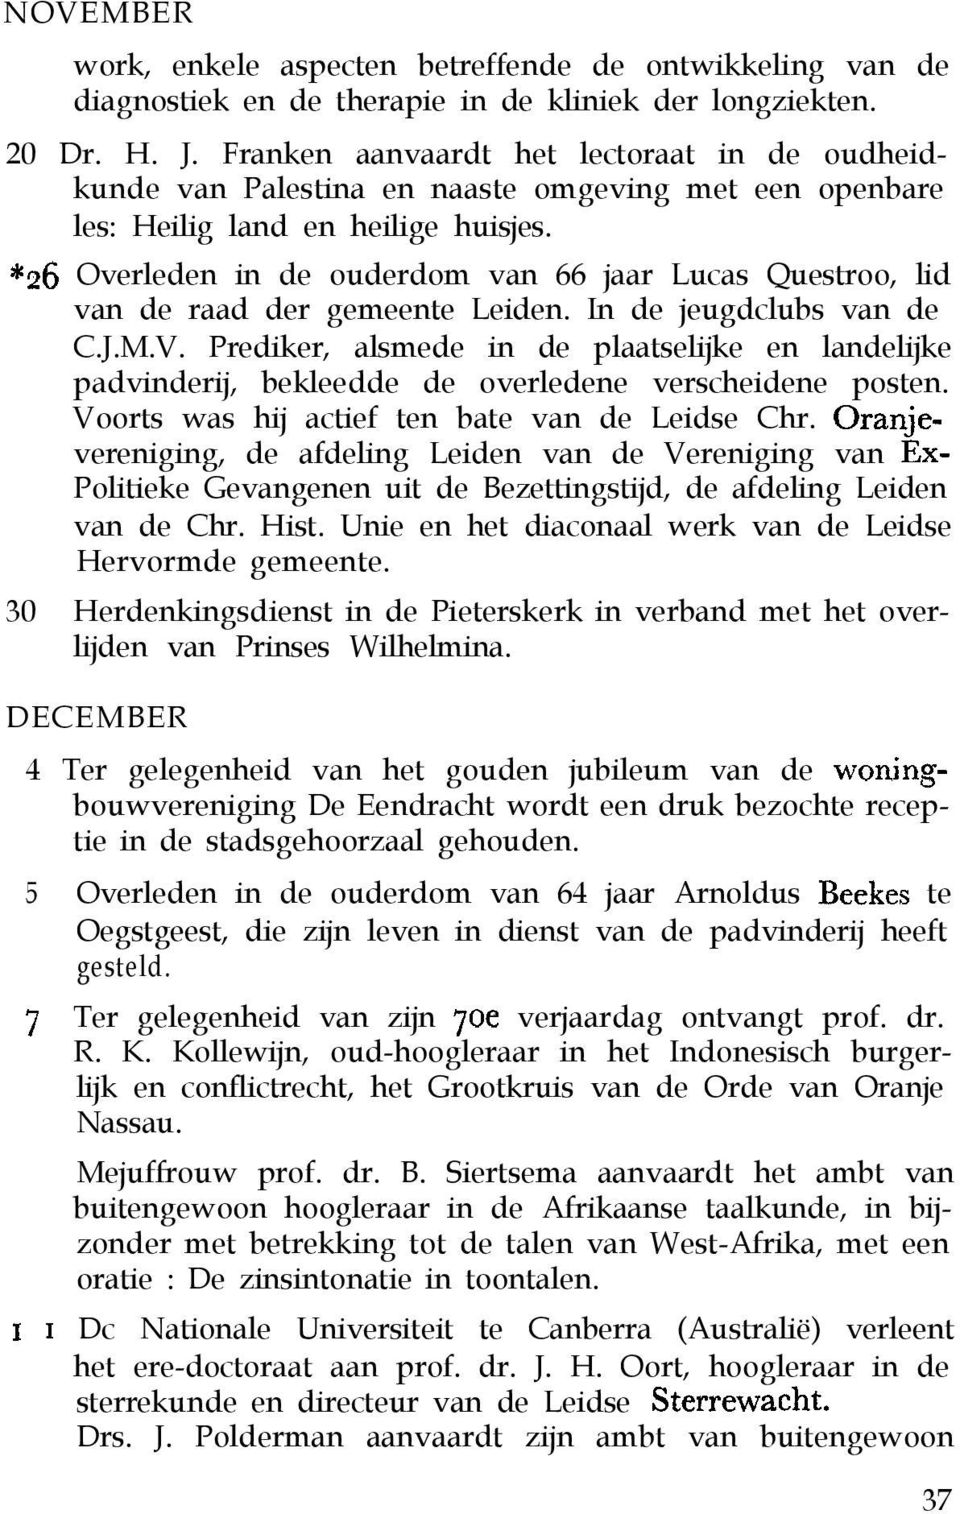 *26 Overleden in de ouderdom van 66 jaar Lucas Questroo, lid van de raad der gemeente Leiden. In de jeugdclubs van de C.J.M.V.